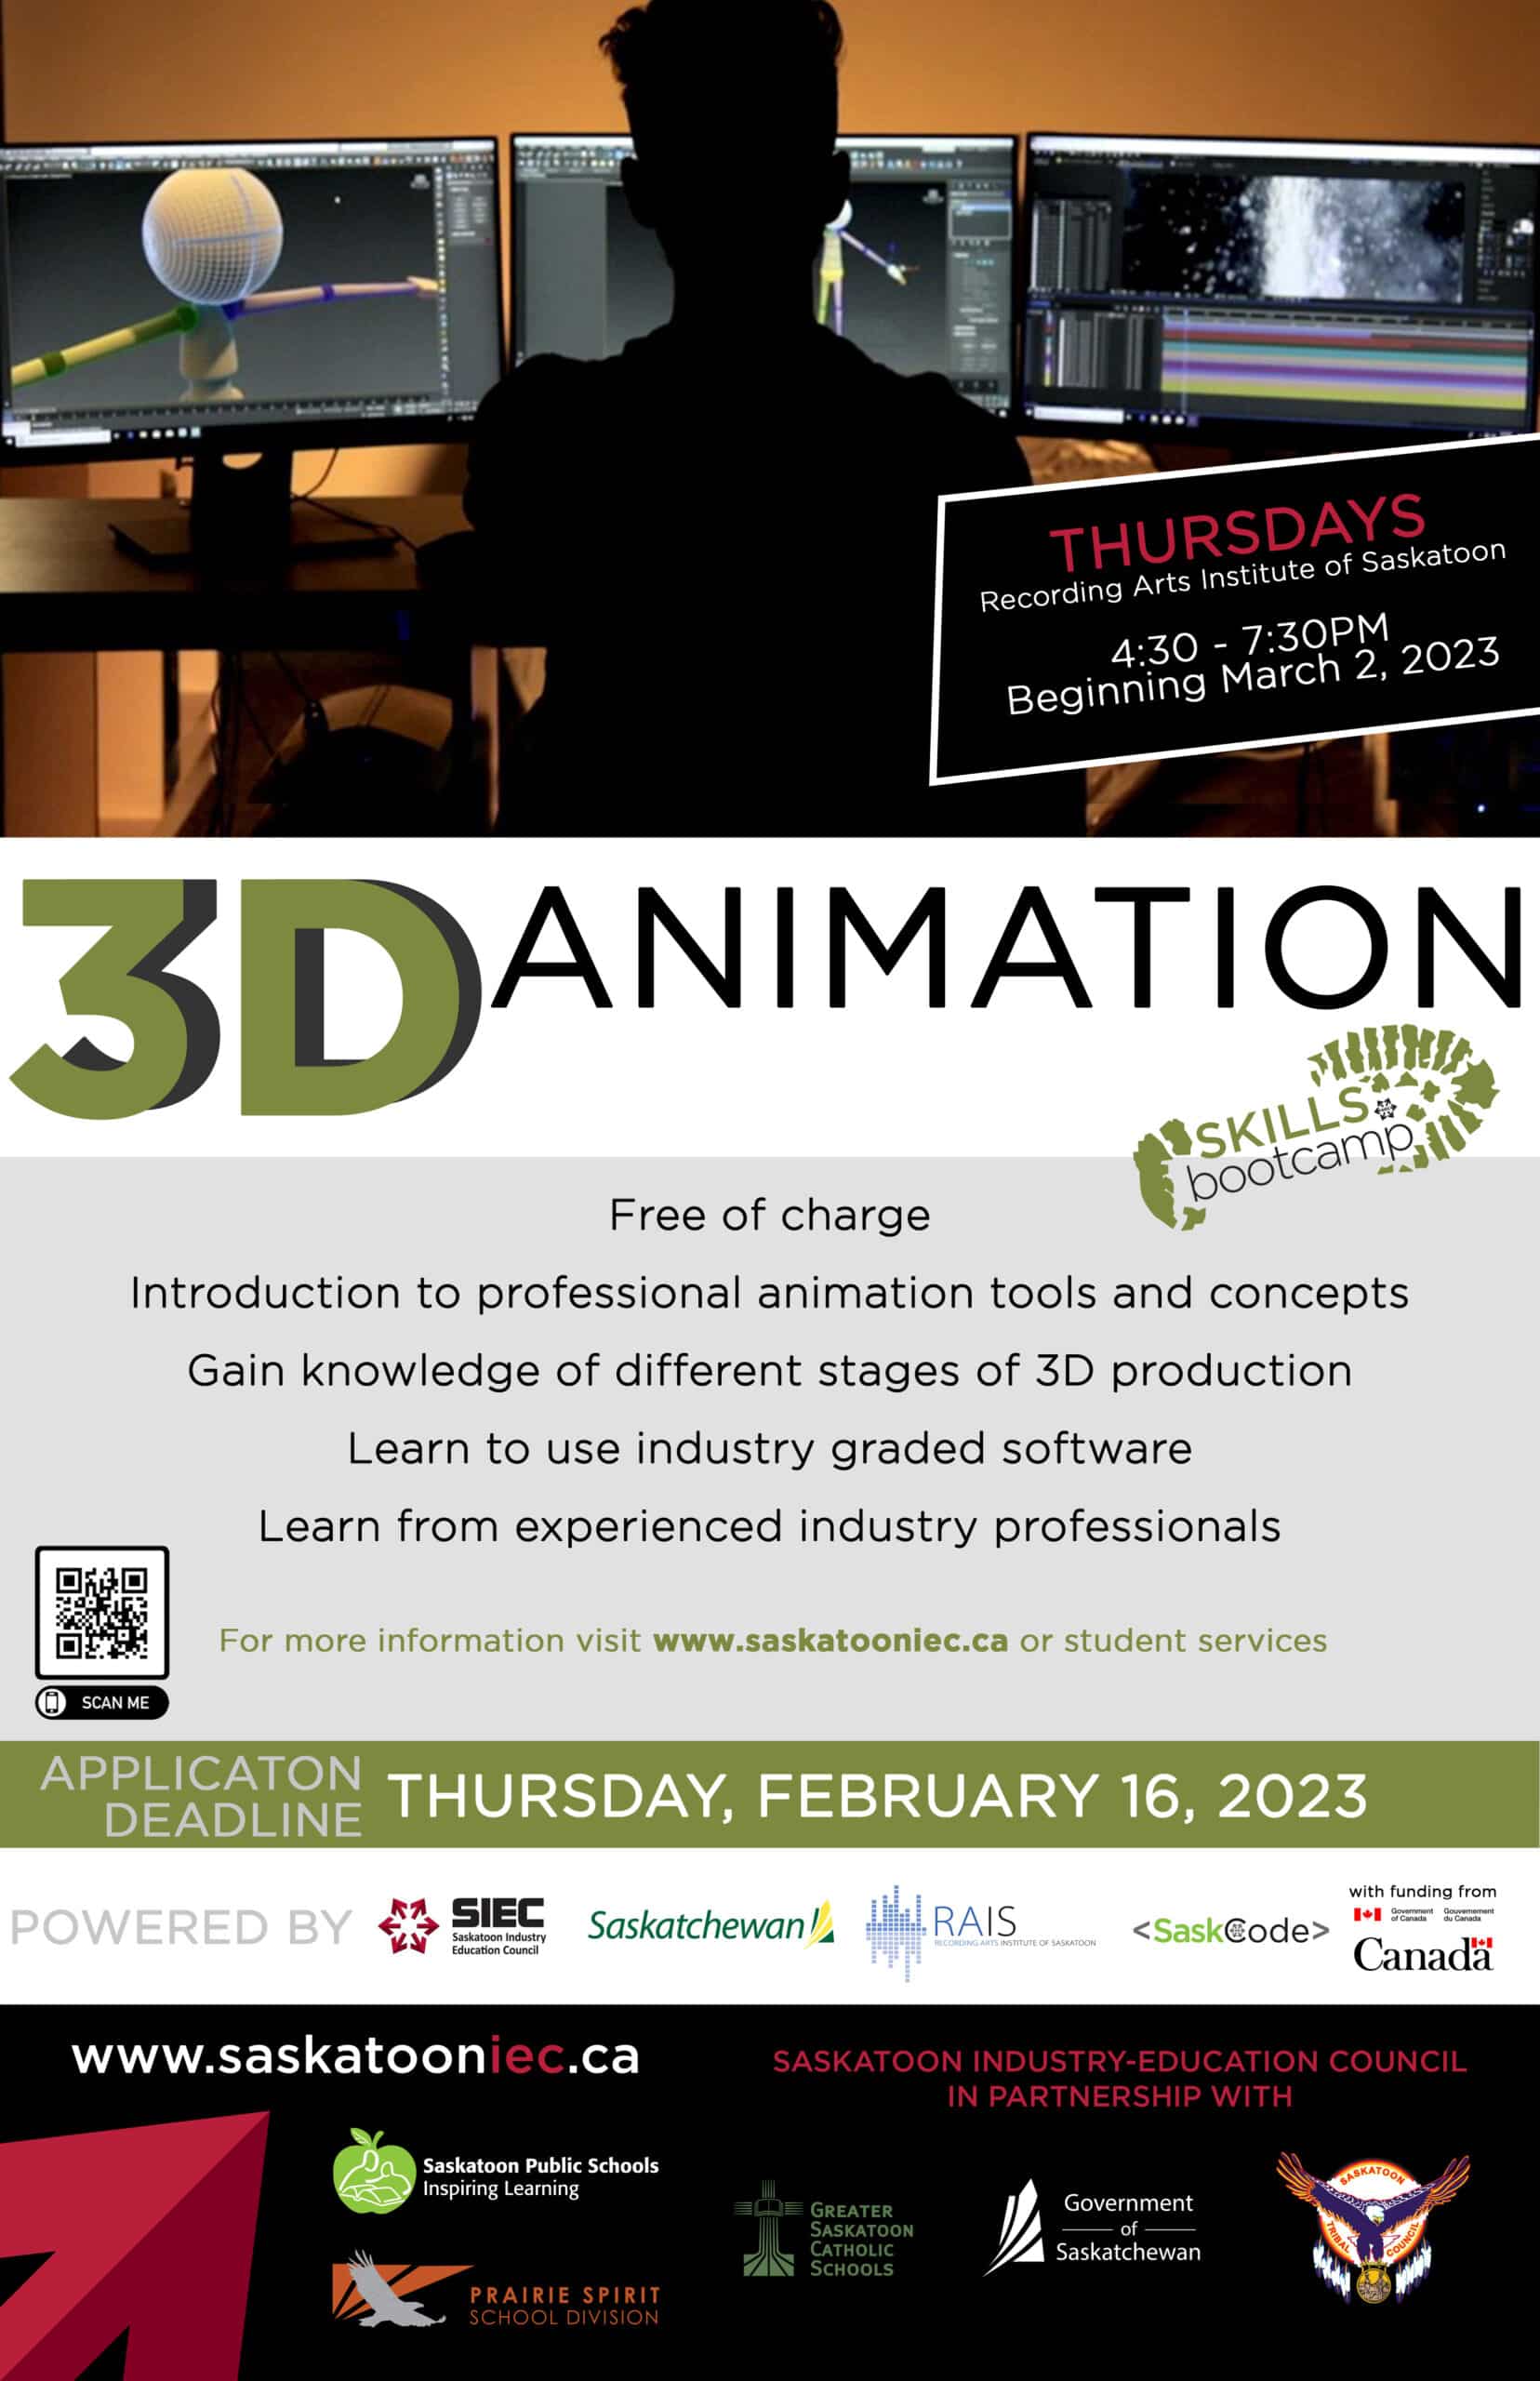 3D Animation - Saskatoon Industry Education Council